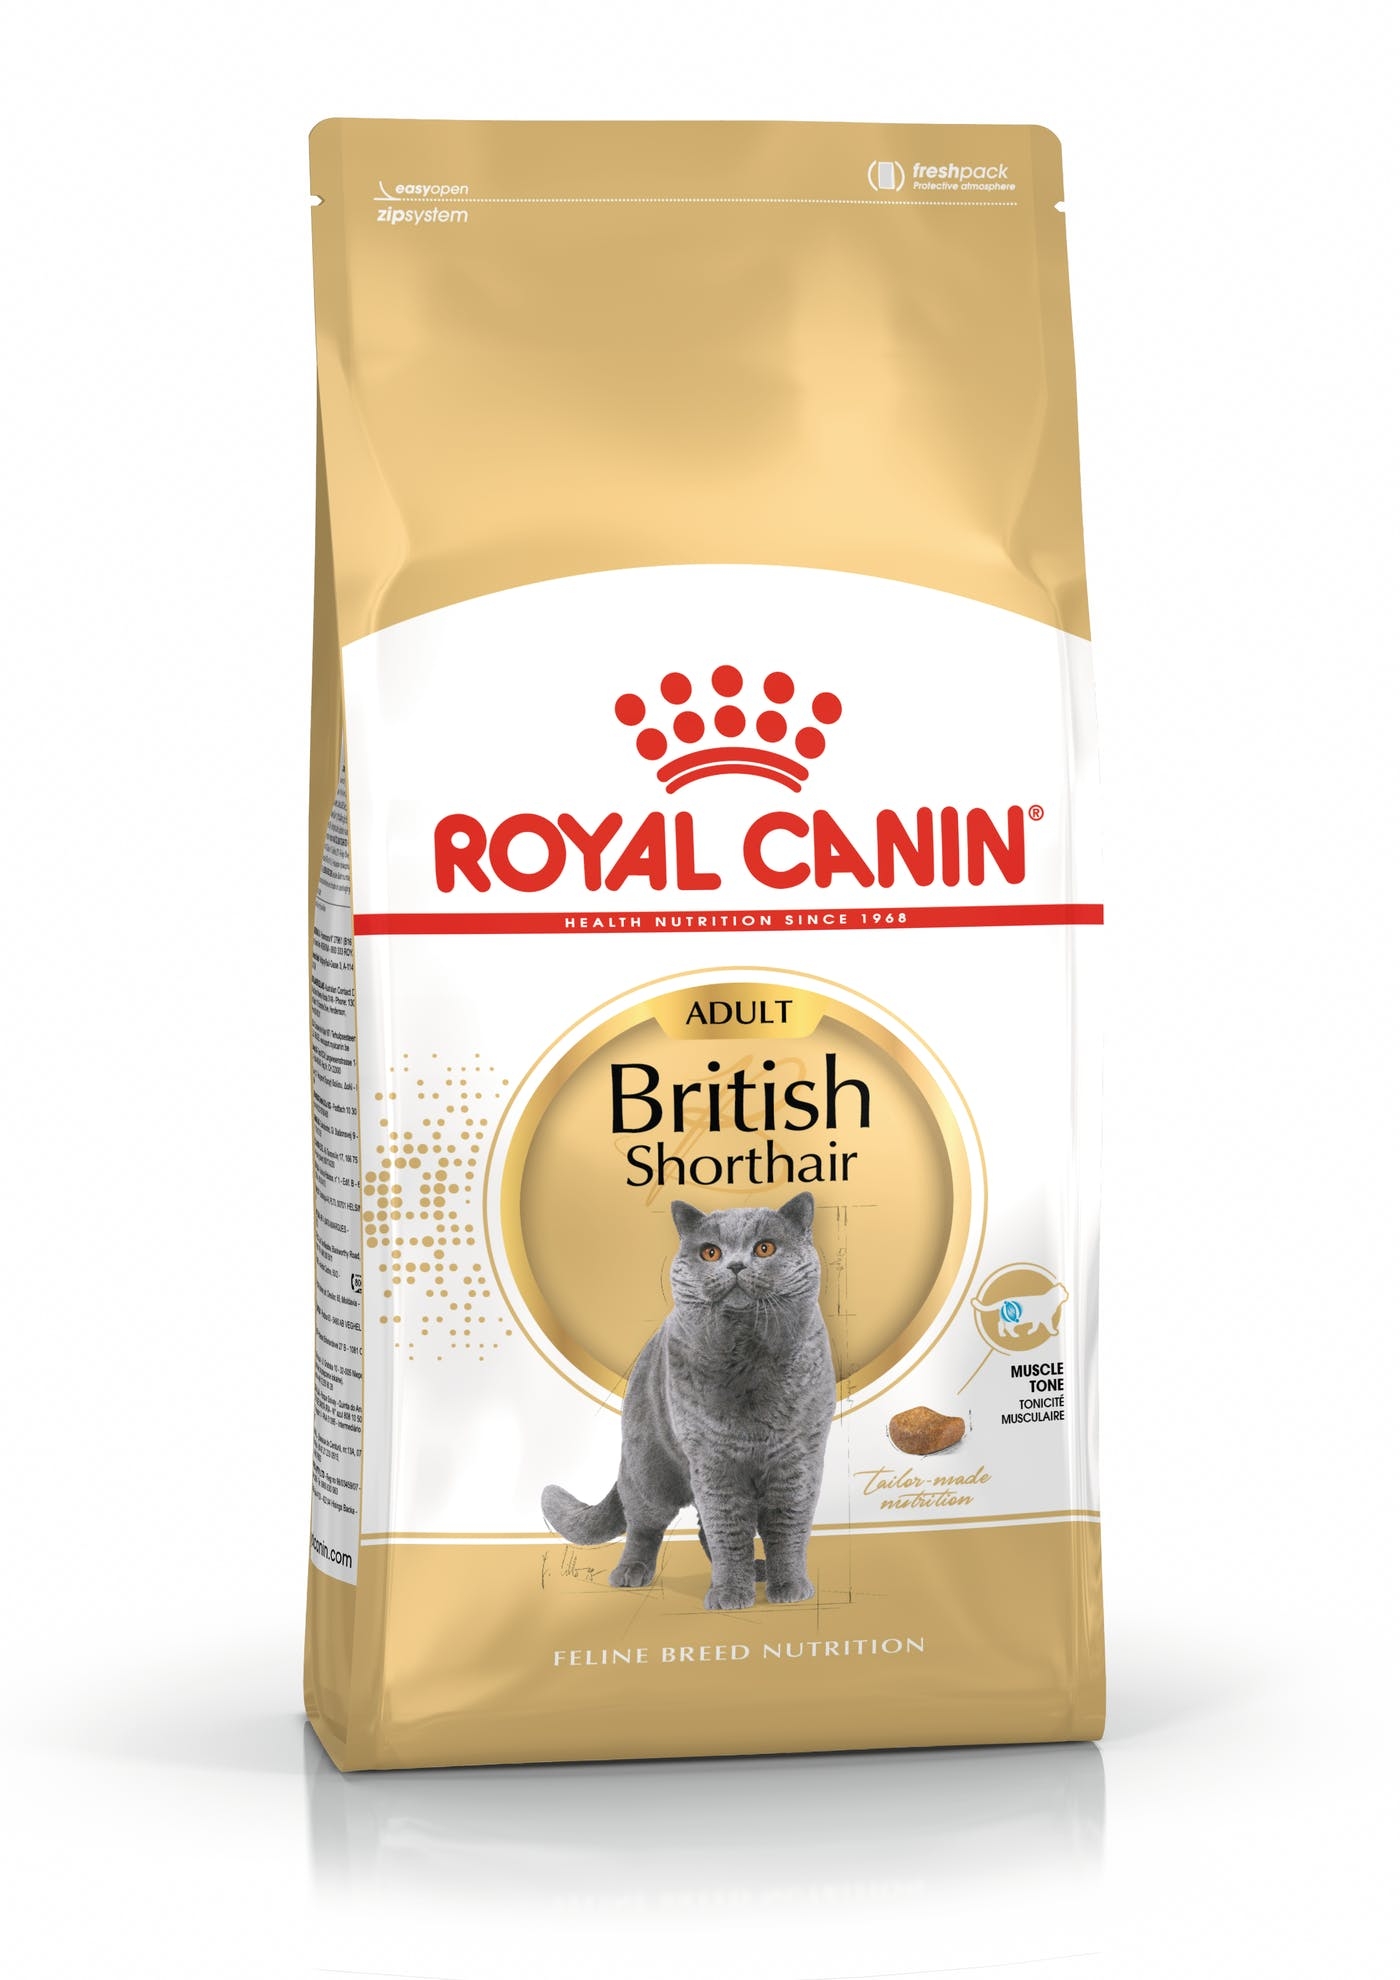 Billede af Royal Canin British Shorthair Adult. Til voksne katte over 1 år